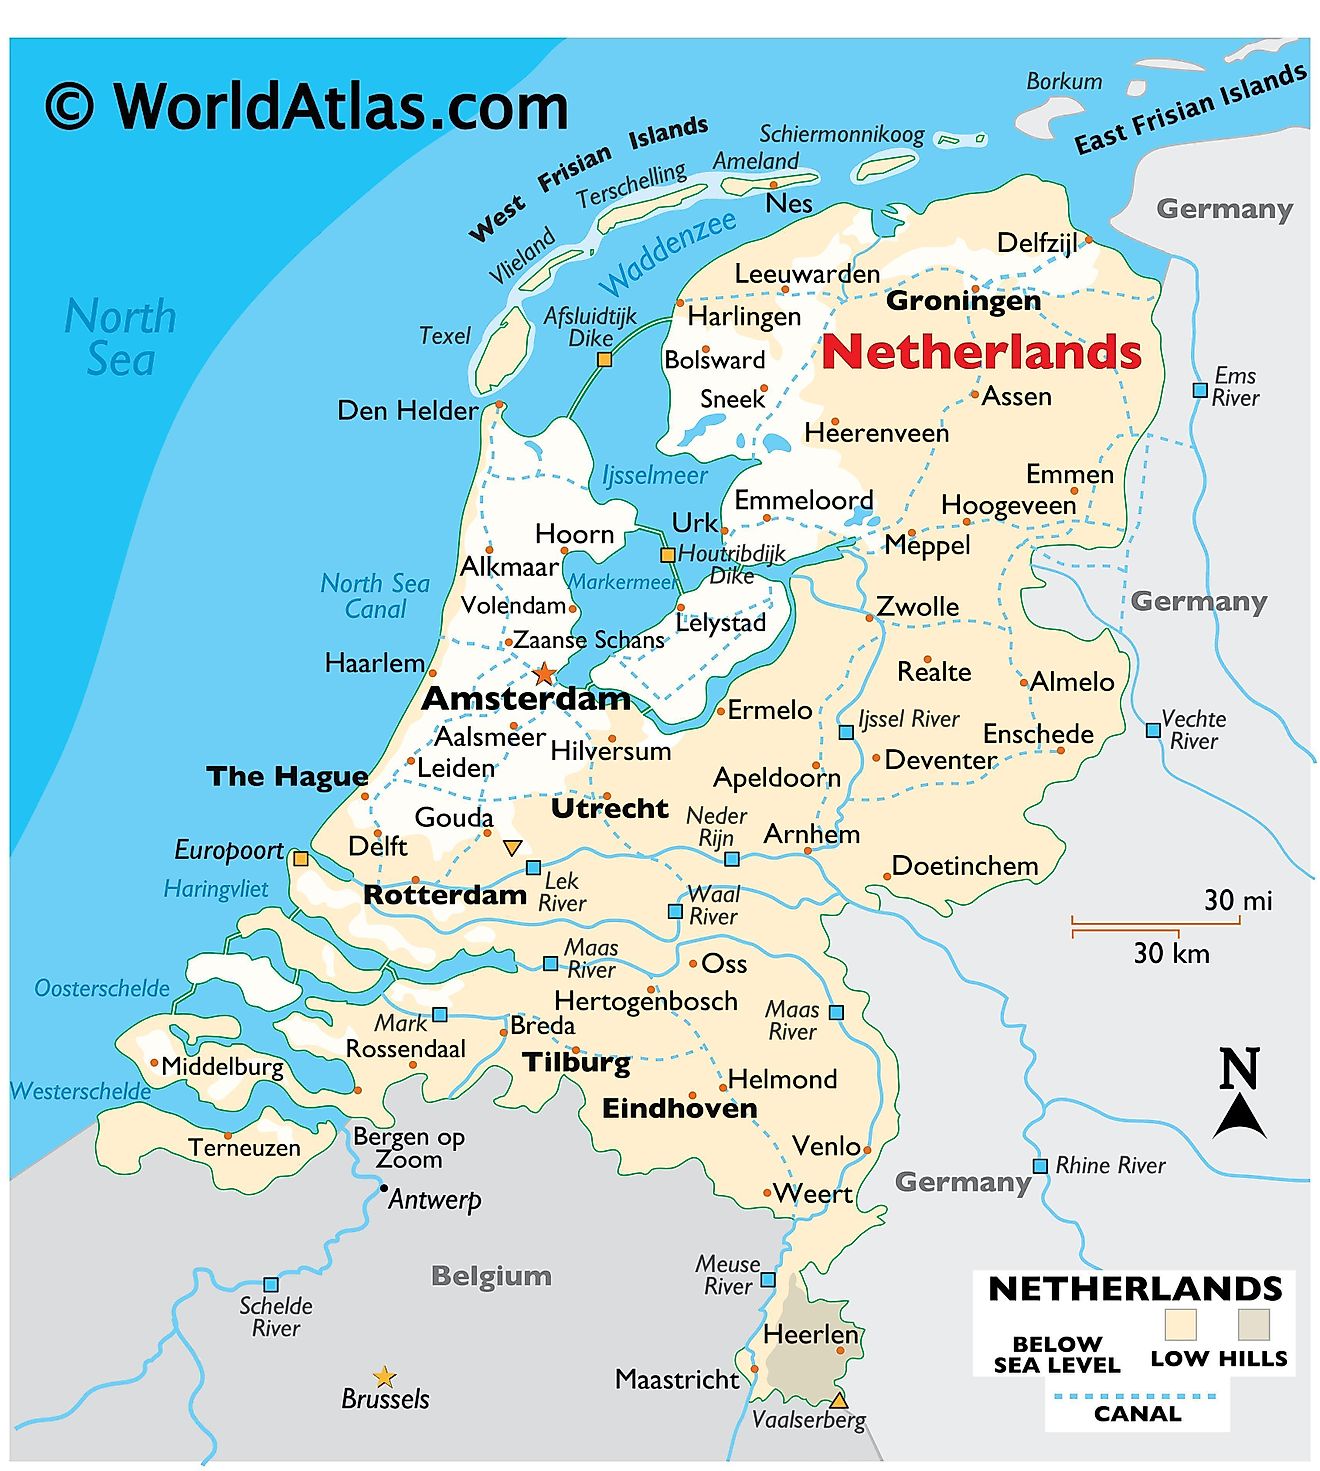 Mapa fizyczna Holandii przedstawiająca rzeźbę terenu, granice międzynarodowe, główne rzeki, punkty skrajne, ważne miasta, wyspy itp.